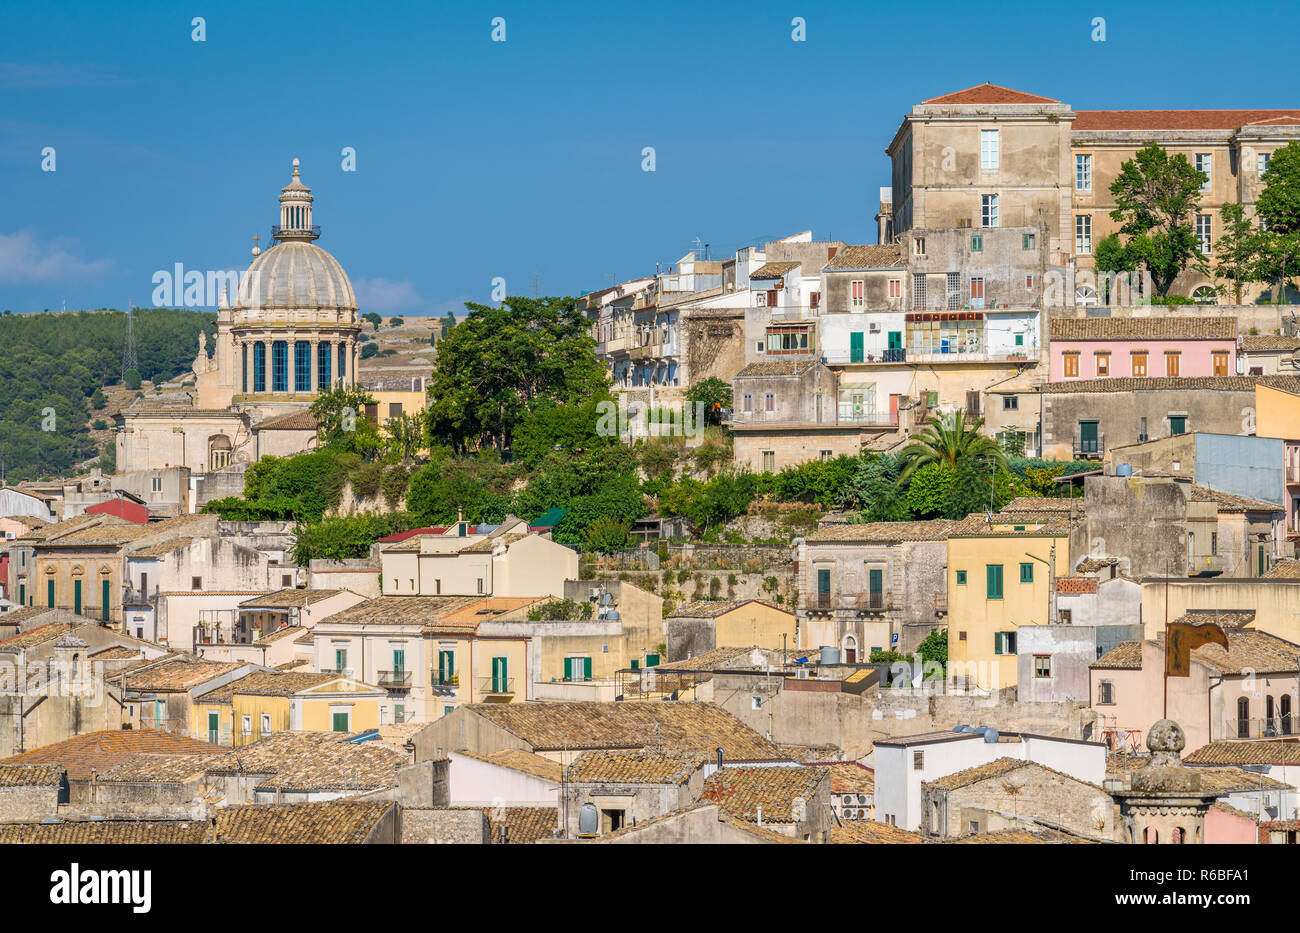 Vue panoramique de Ragusa Ibla avec le dôme de la cathédrale San Giorgio. La Sicile (Sicilia), dans le sud de l'Italie. Banque D'Images